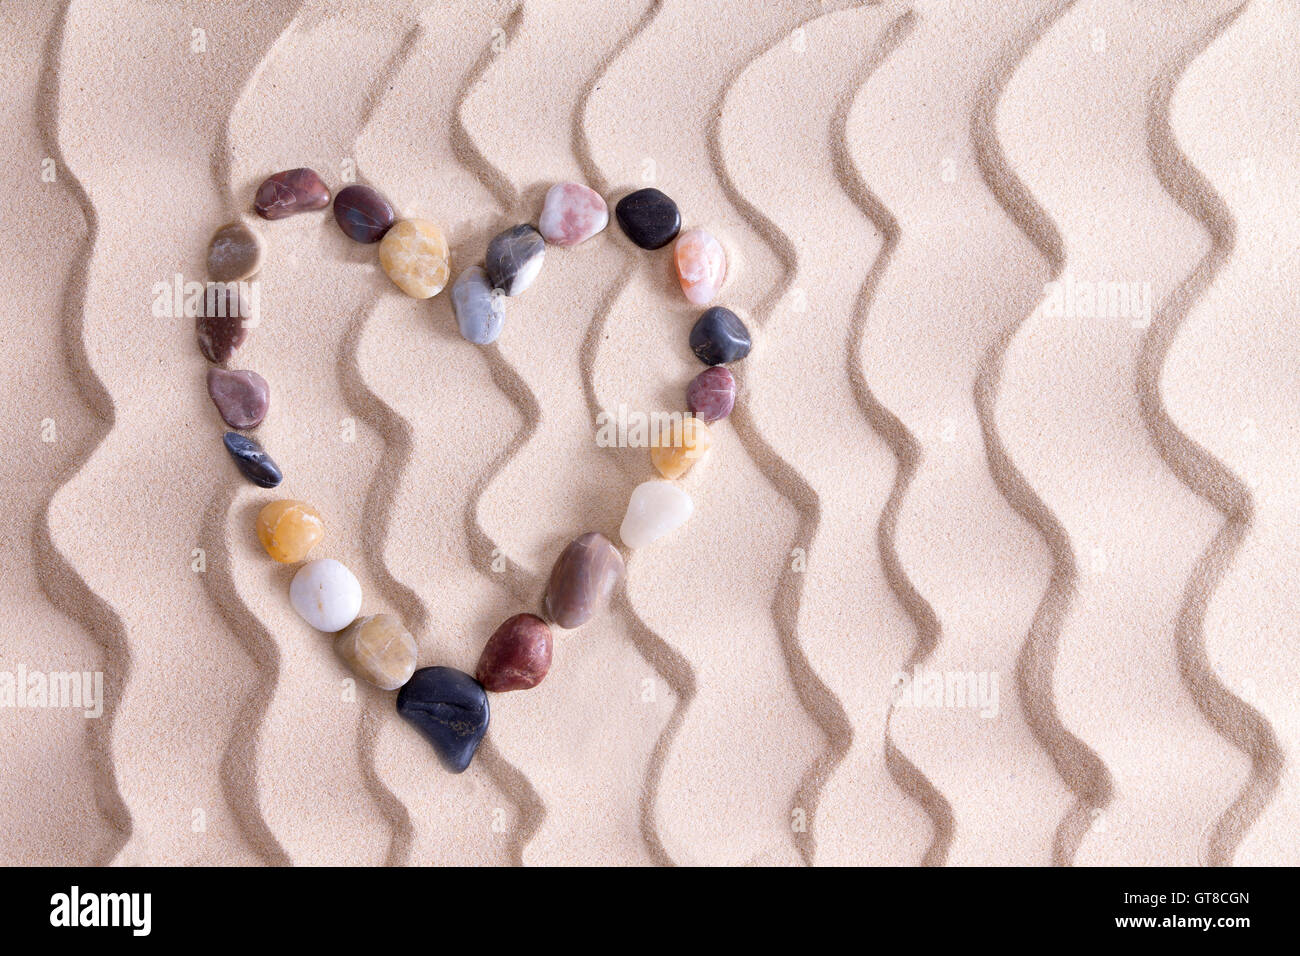 Dekorative Kiesel Herz Fersenone alluvialen Quarzit, Achat und Basalt Steine symbolisch für Liebe und Romantik am goldenen Strand Stockfoto